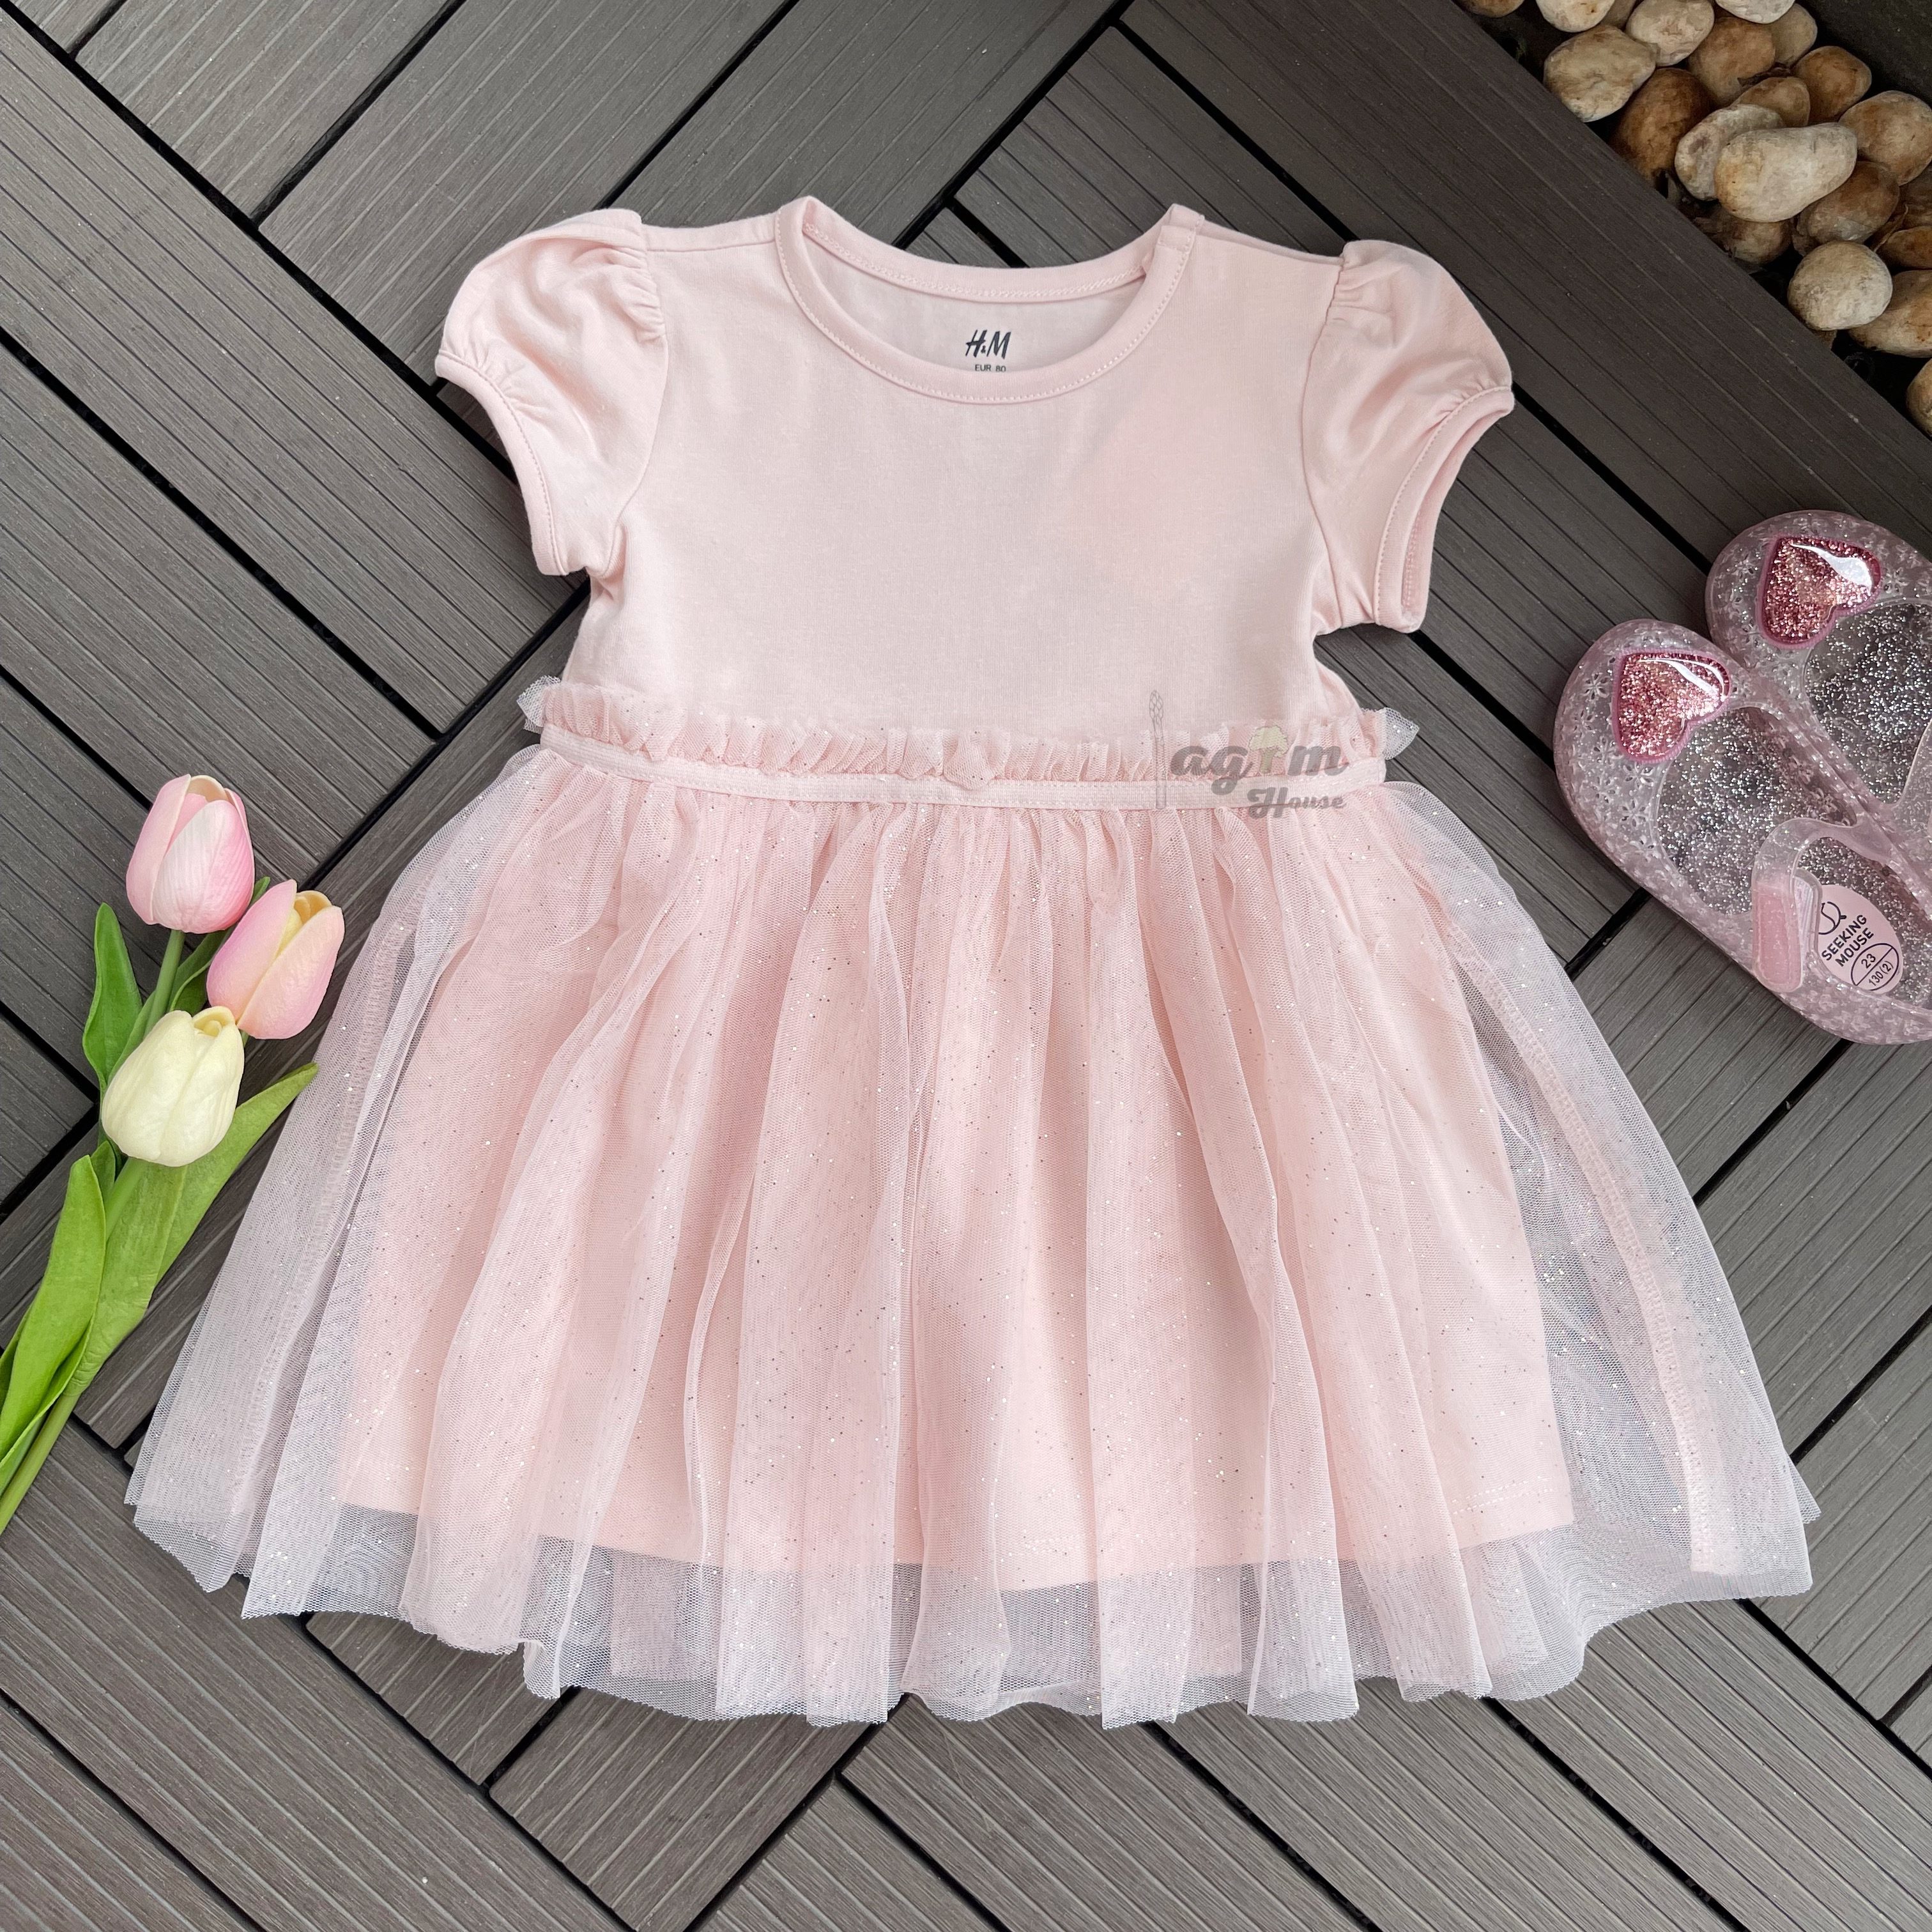 Váy hồng voan xòe nhũ kim tuyến váy công chúa HM auth cho bé gái từ 8